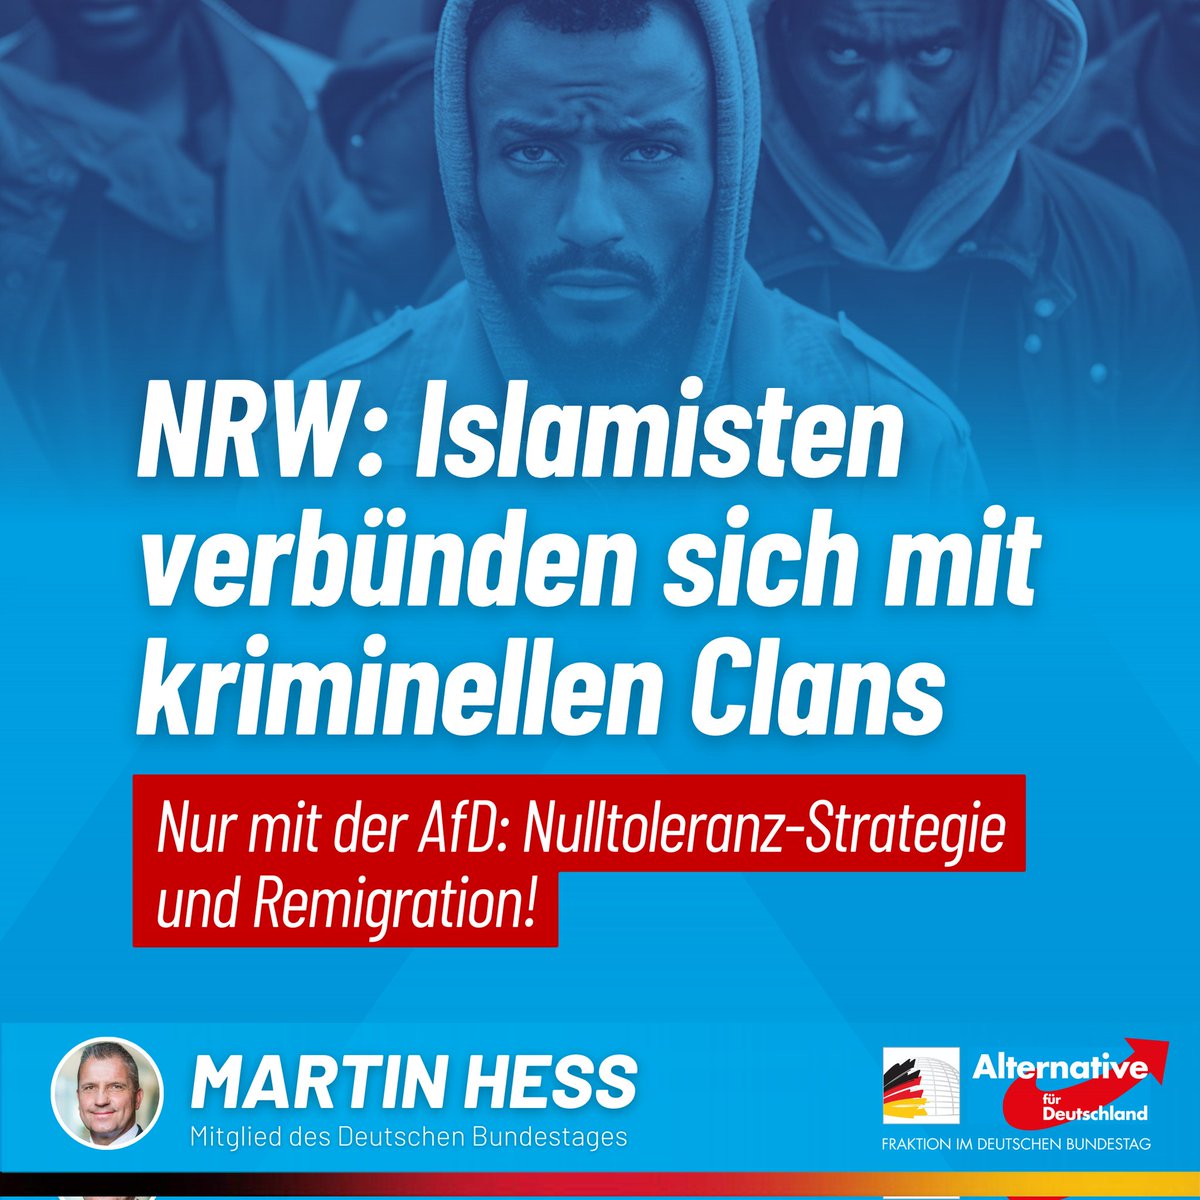 „Der Islamismus ist weiter auf dem Vormarsch', musste Nordrhein-Westfalens Innenminister Reul (CDU) nun öffentlich zugeben. Grund für diese entlarvende Aussage ist die Veröffentlichung des Lagebildes „Islamismus“, das das Totalversagen der schwarz-grünen Koalition dokumentiert:…